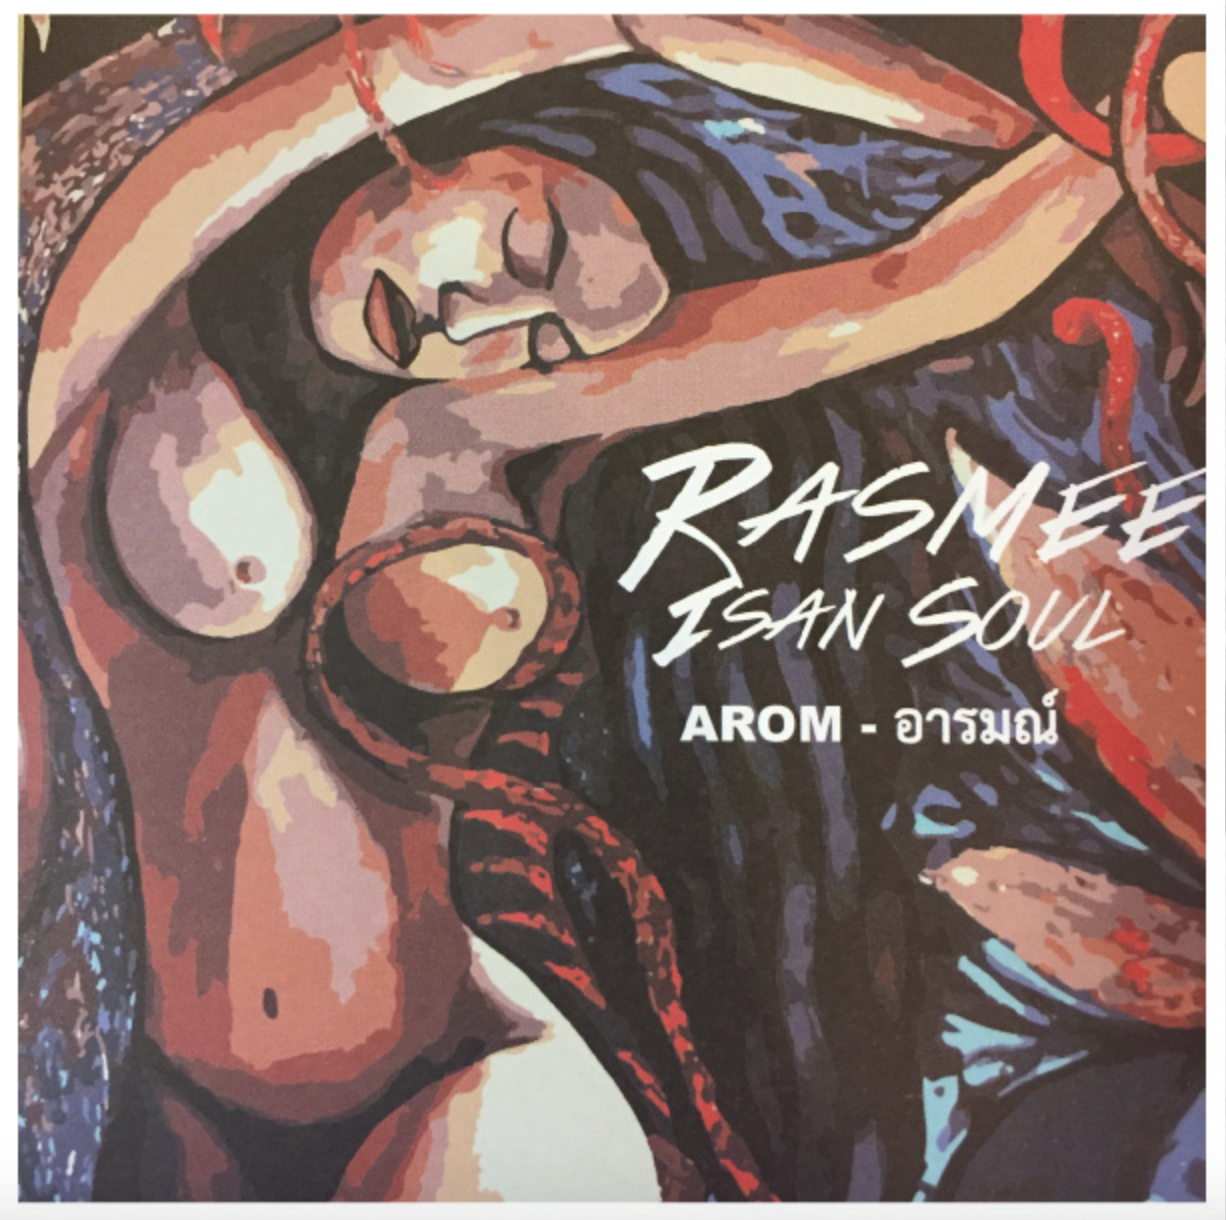 [รีวิว] อีกหนึ่งห้วง “Arom” จากหมอลำอินดี้ Rasmee Isan Soul